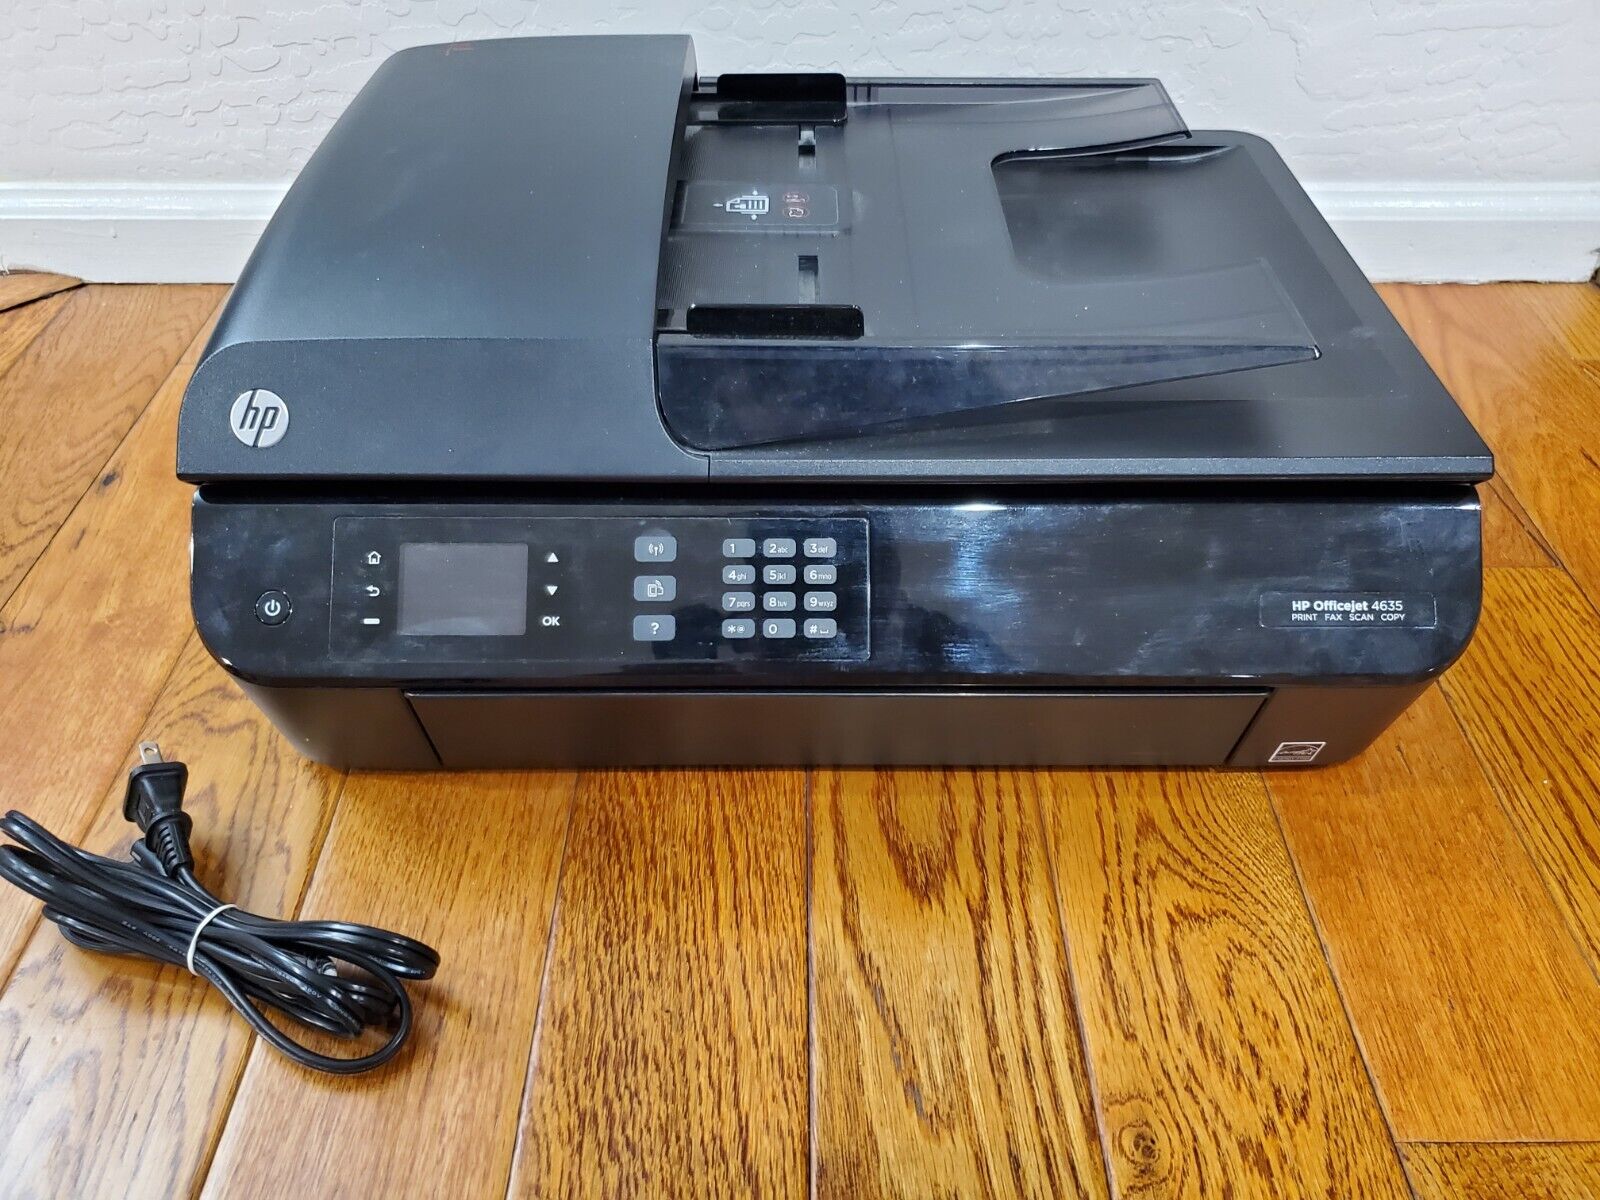 HP Officejet 4630 All-In-One Inkjet Wireless Printer Copier Scanner Fax WiFi